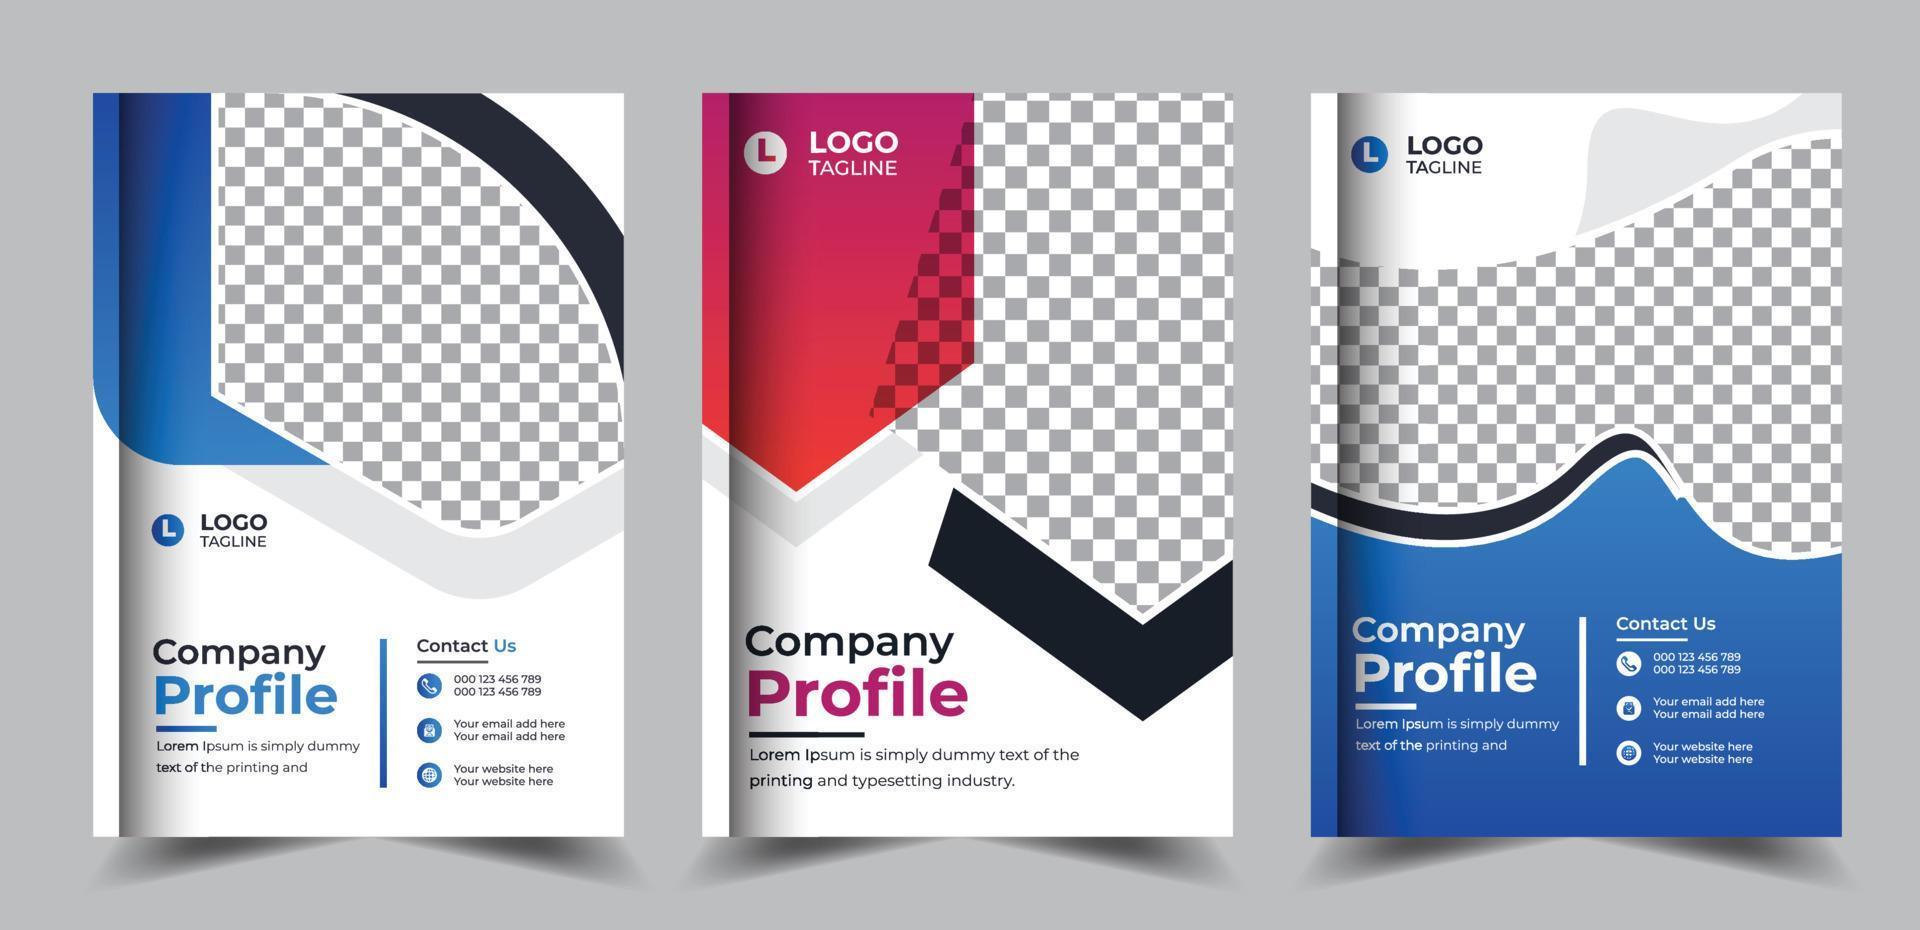 folleto de perfil de empresa corporativa informe anual moderno diseño de portada de libro de negocios vector